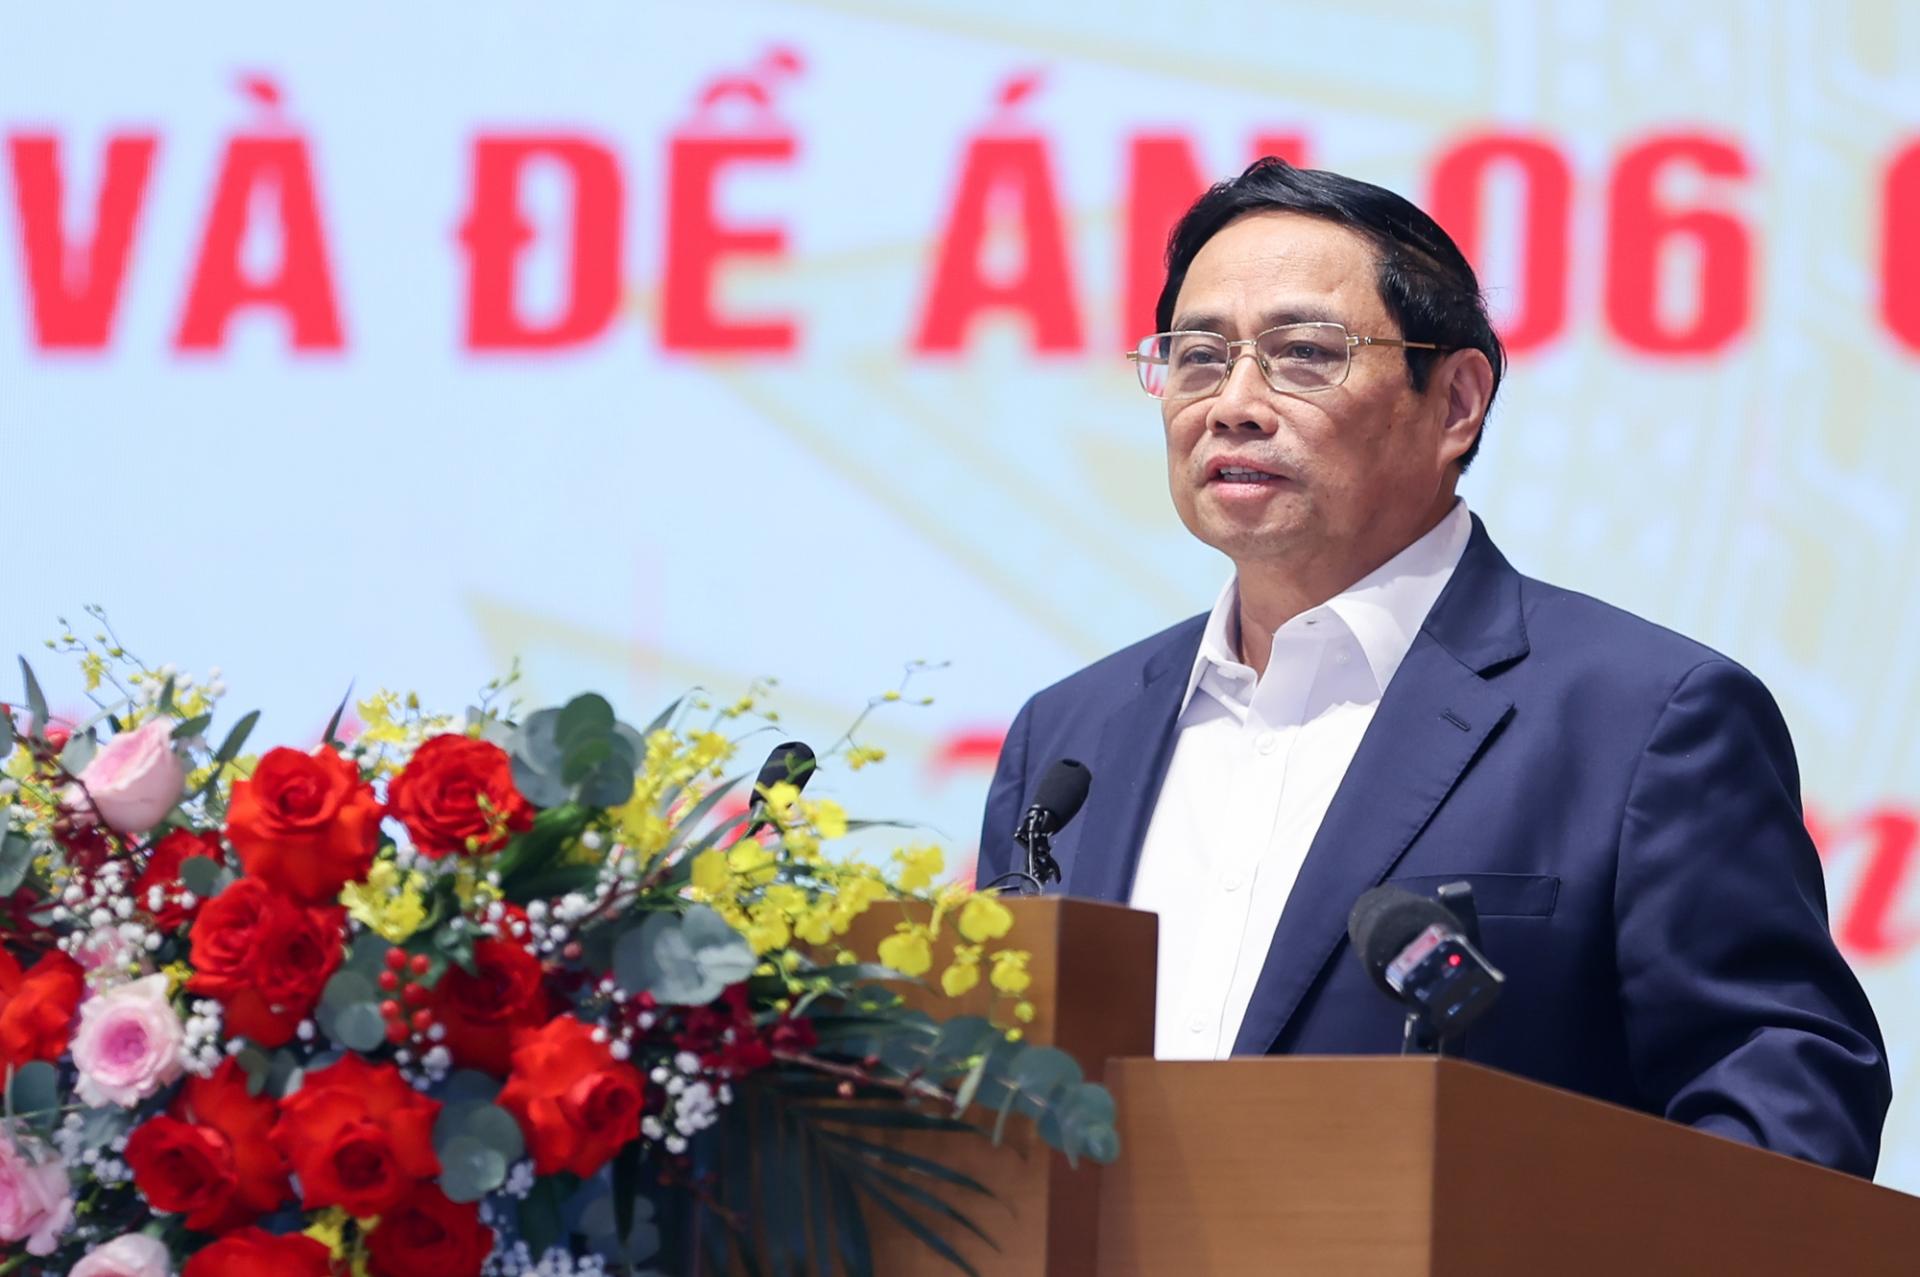 Thủ tướng Phạm Minh Chính phát biểu kết luận Hội nghị. Ảnh: VGP